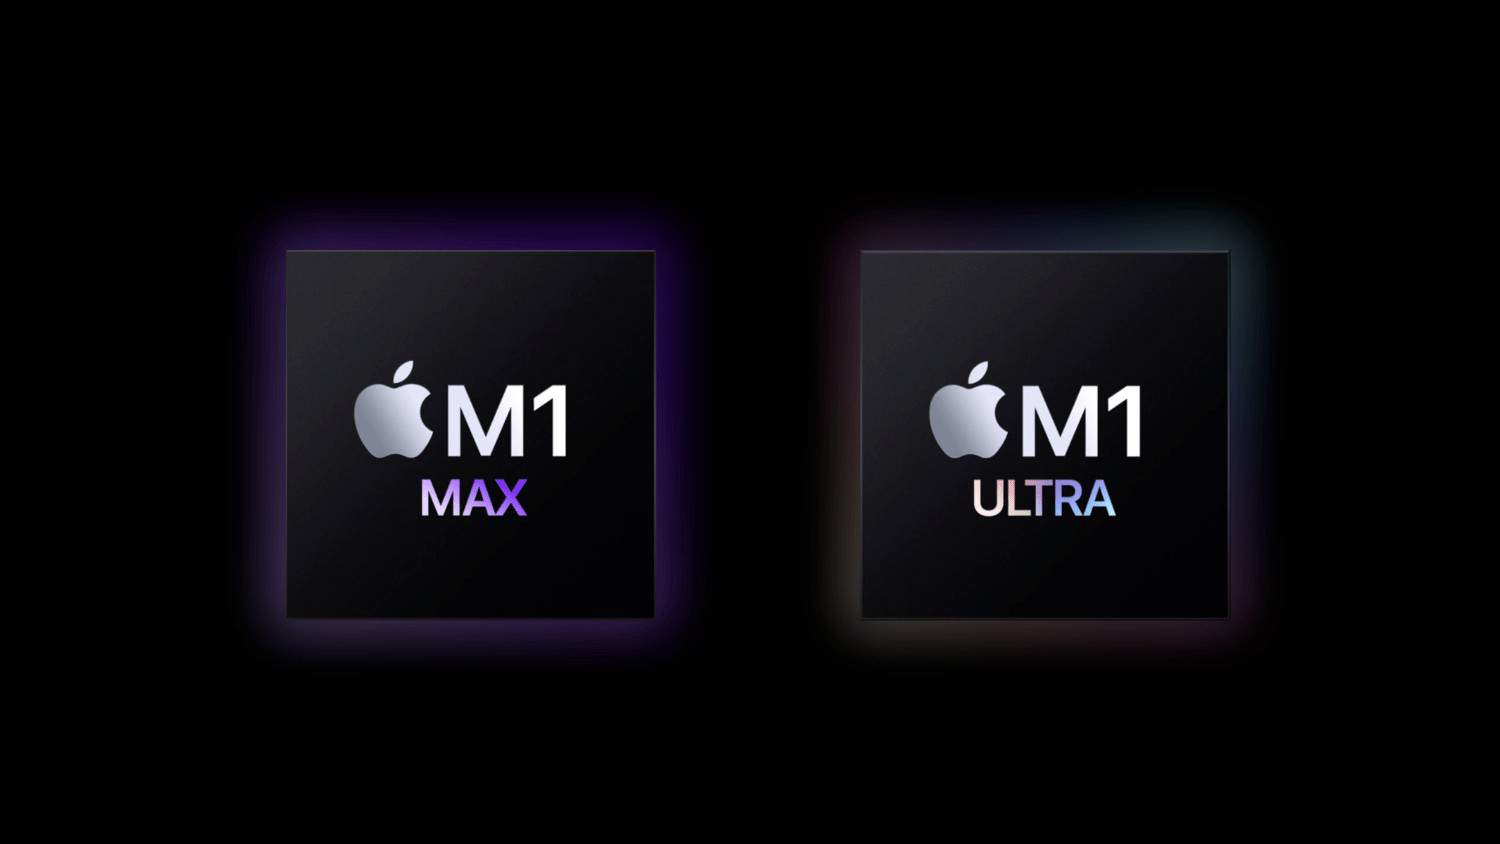 Apple M1 Ultraを積んだMac StudioがM1 Max版より1kg重い理由について説明